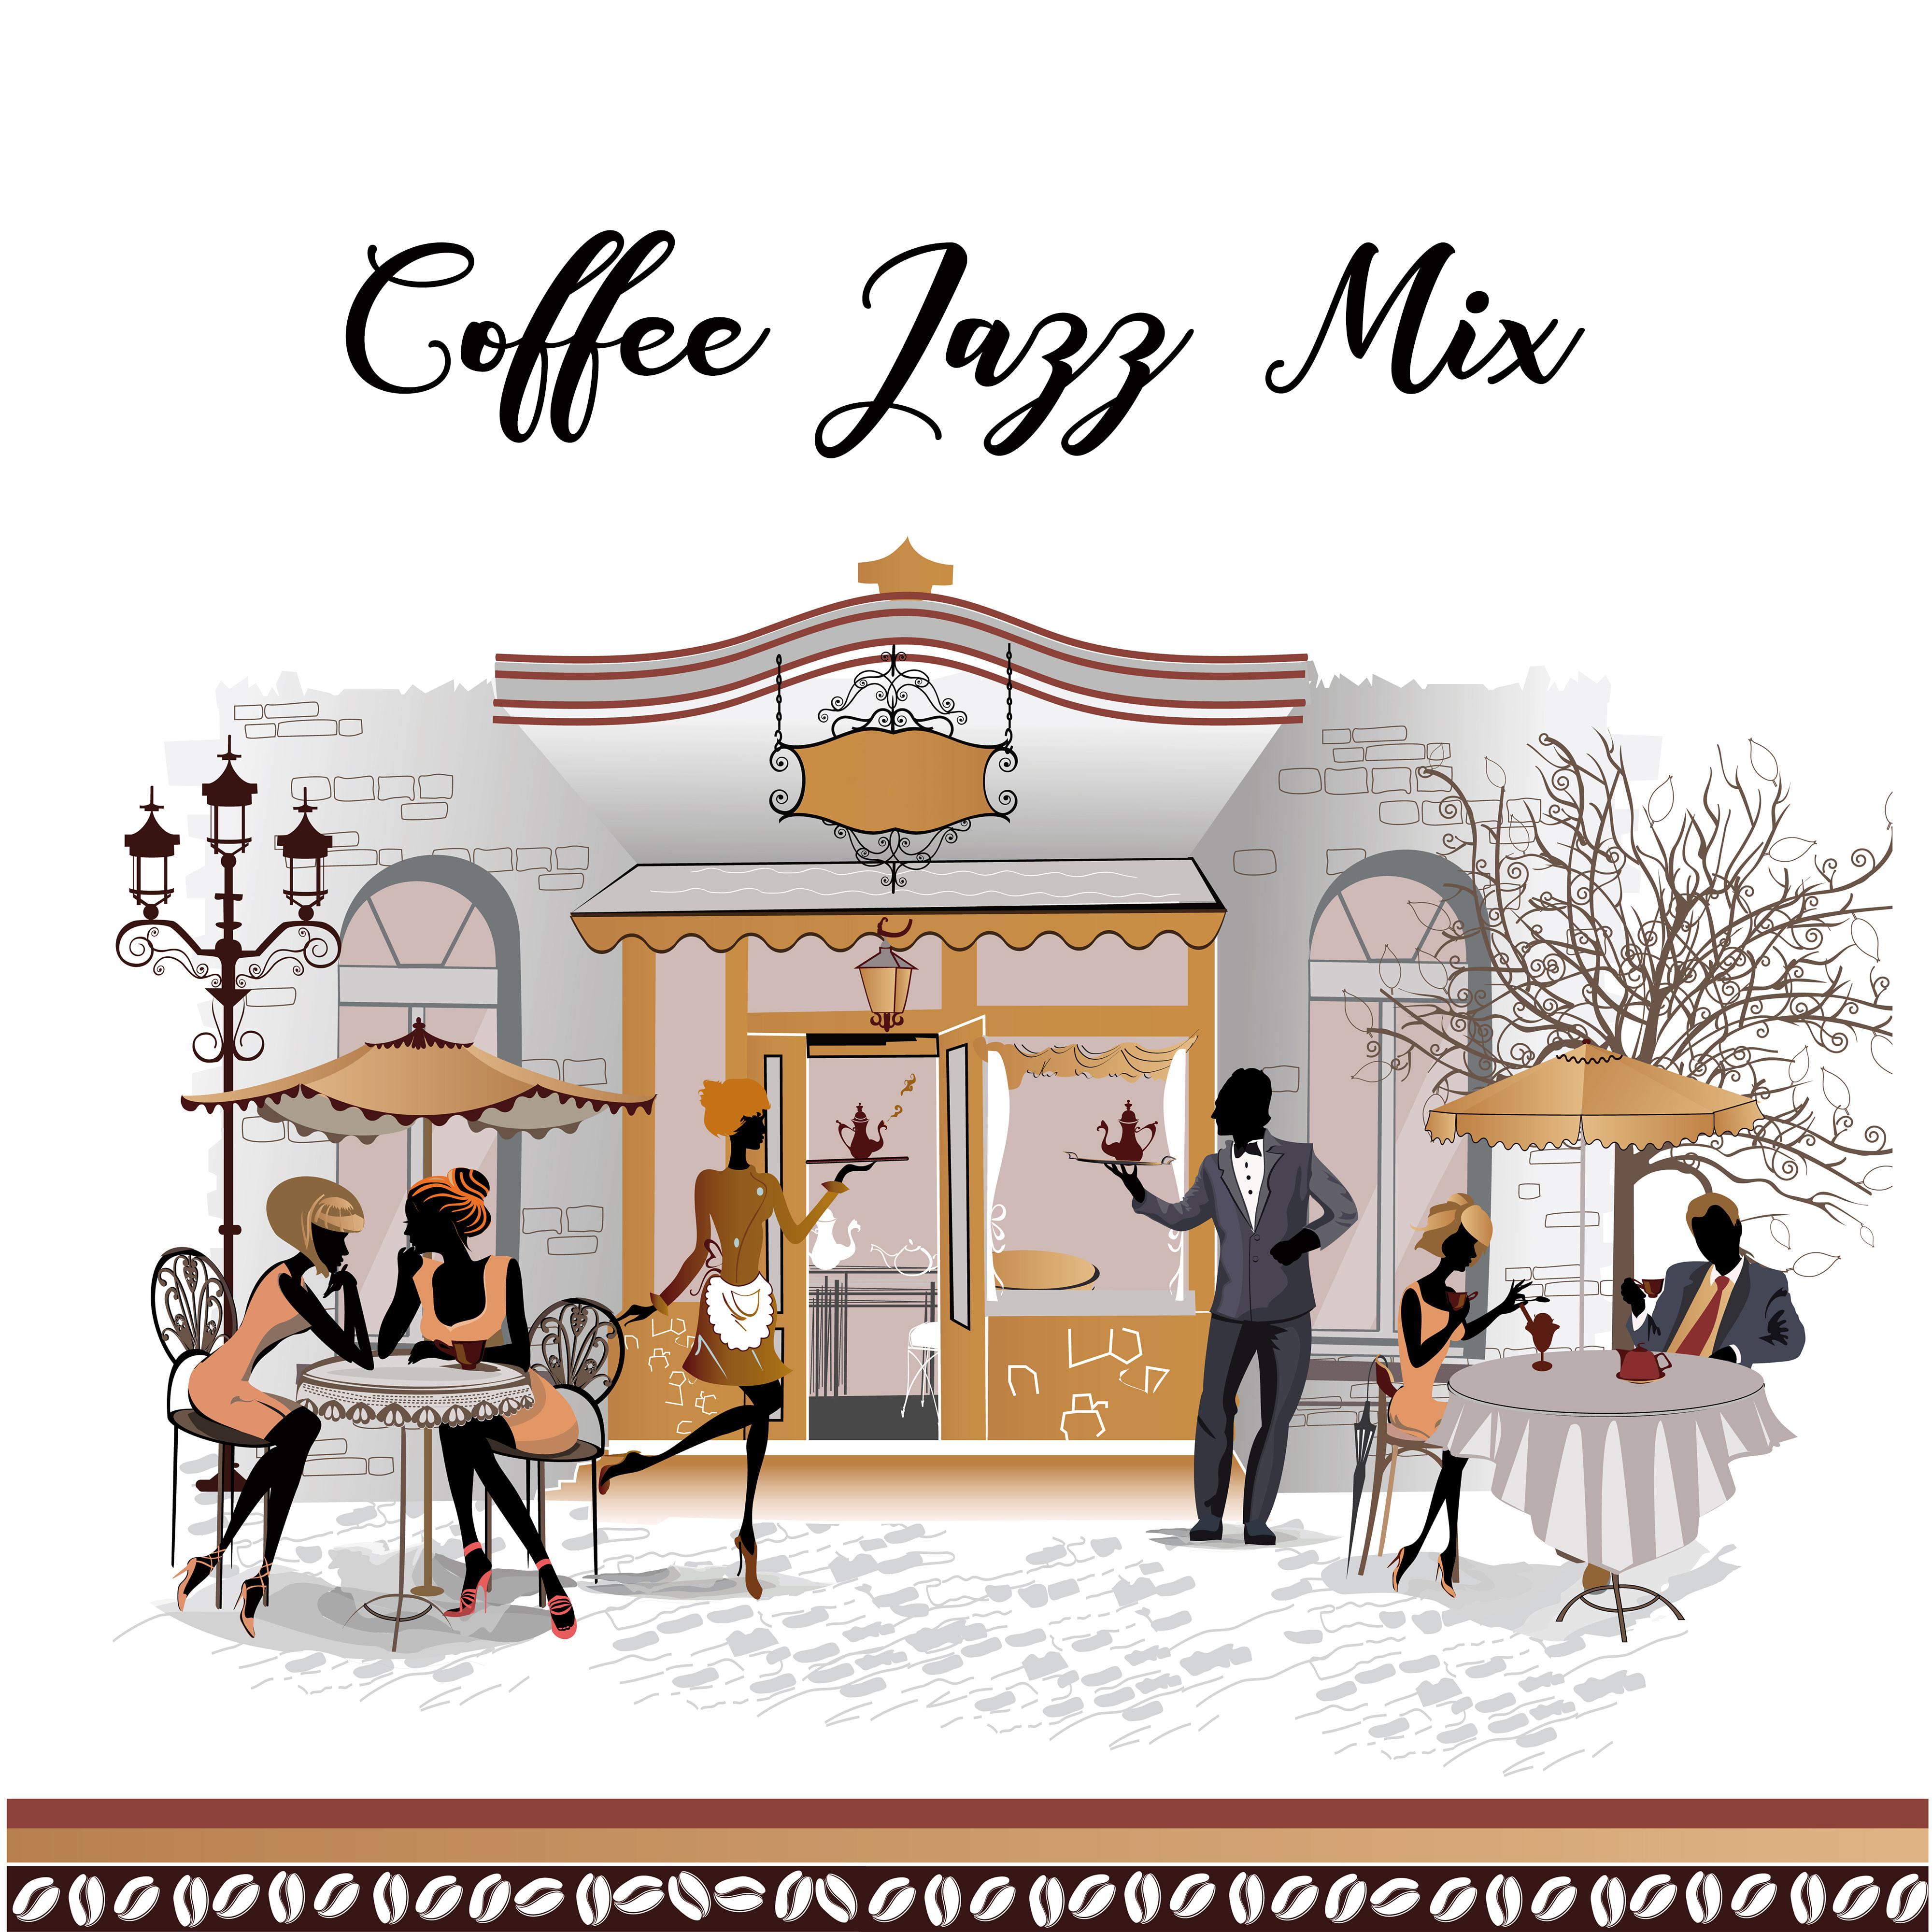 Coffee Jazz Mix